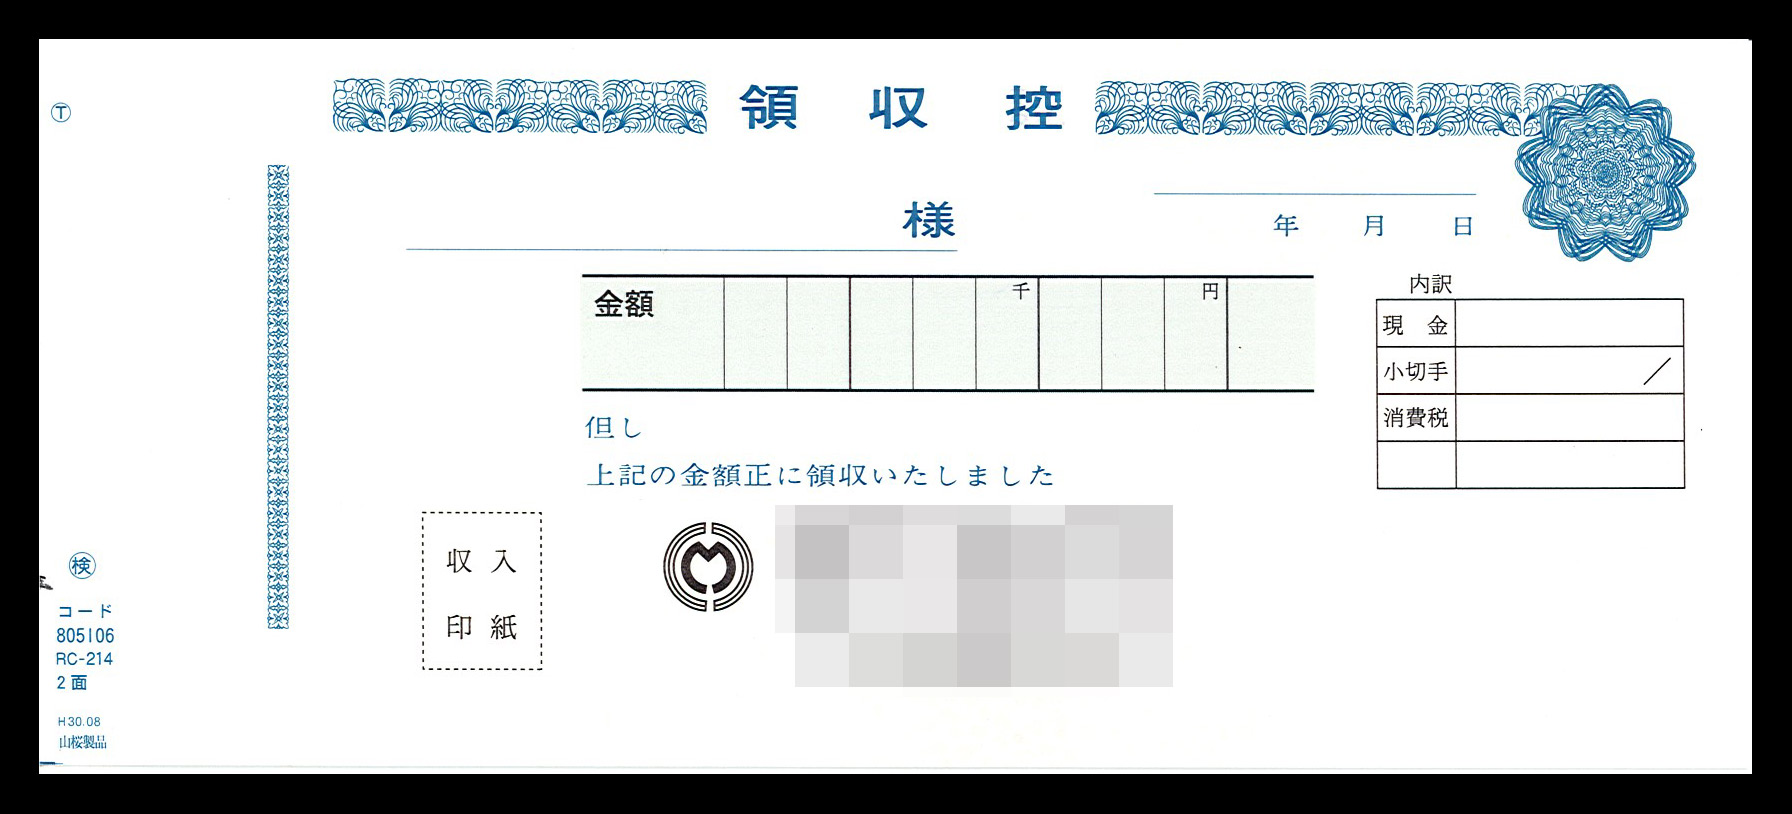 総合金物業で使用する領収書（2枚複写50組）の伝票作成実績